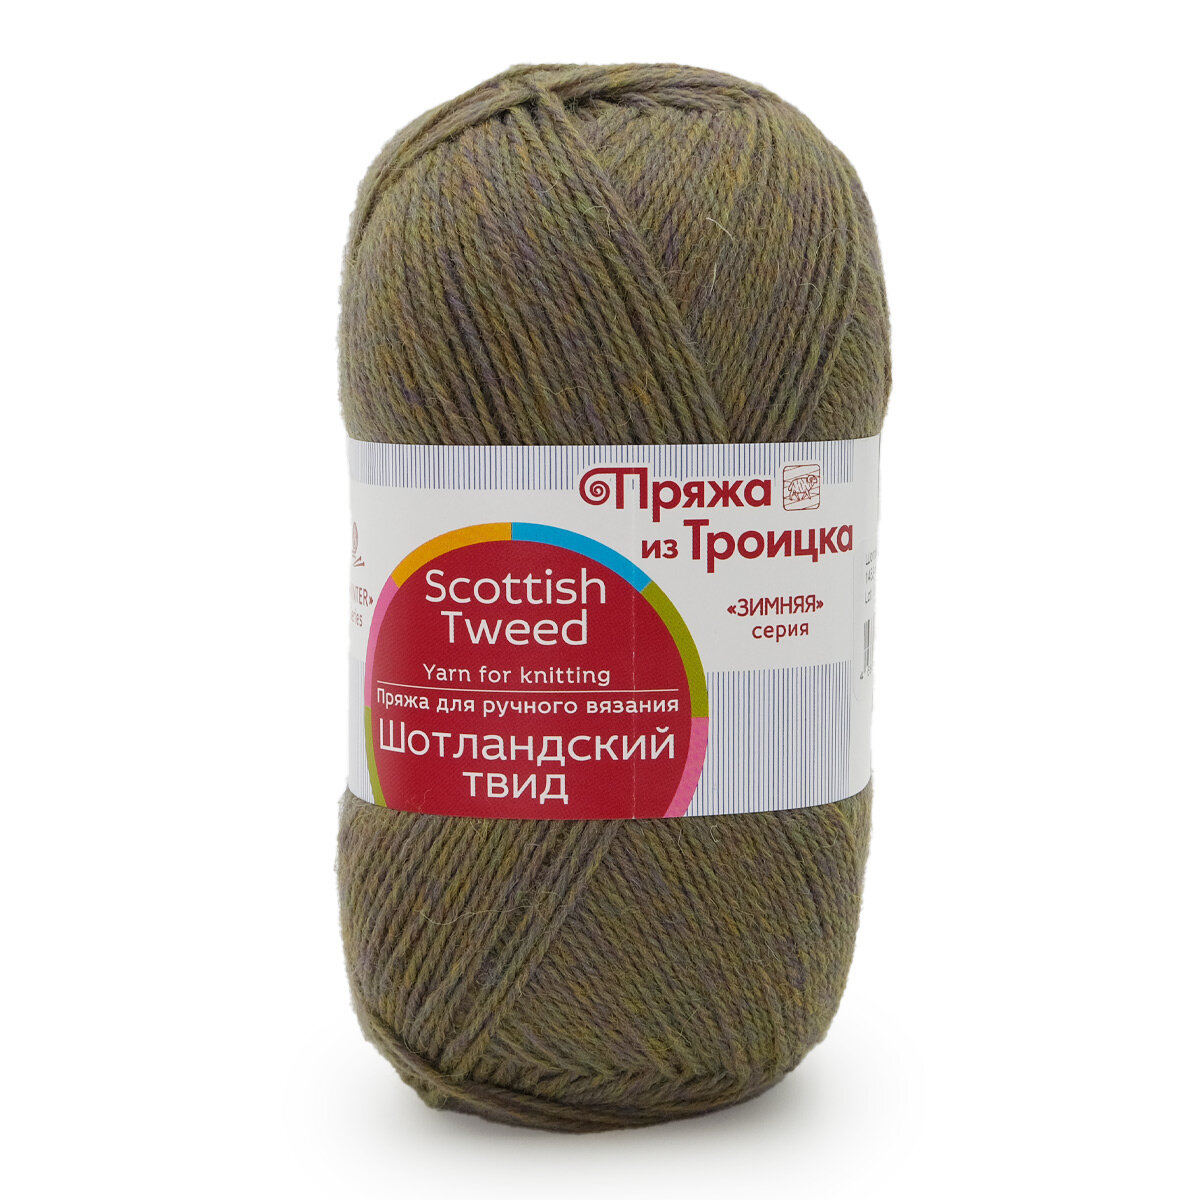 Пряжа для вязания из Троицка 'Шотландский твид', 100г, 360м (100% шерсть) (1453 меланж хаки), 10 мотков